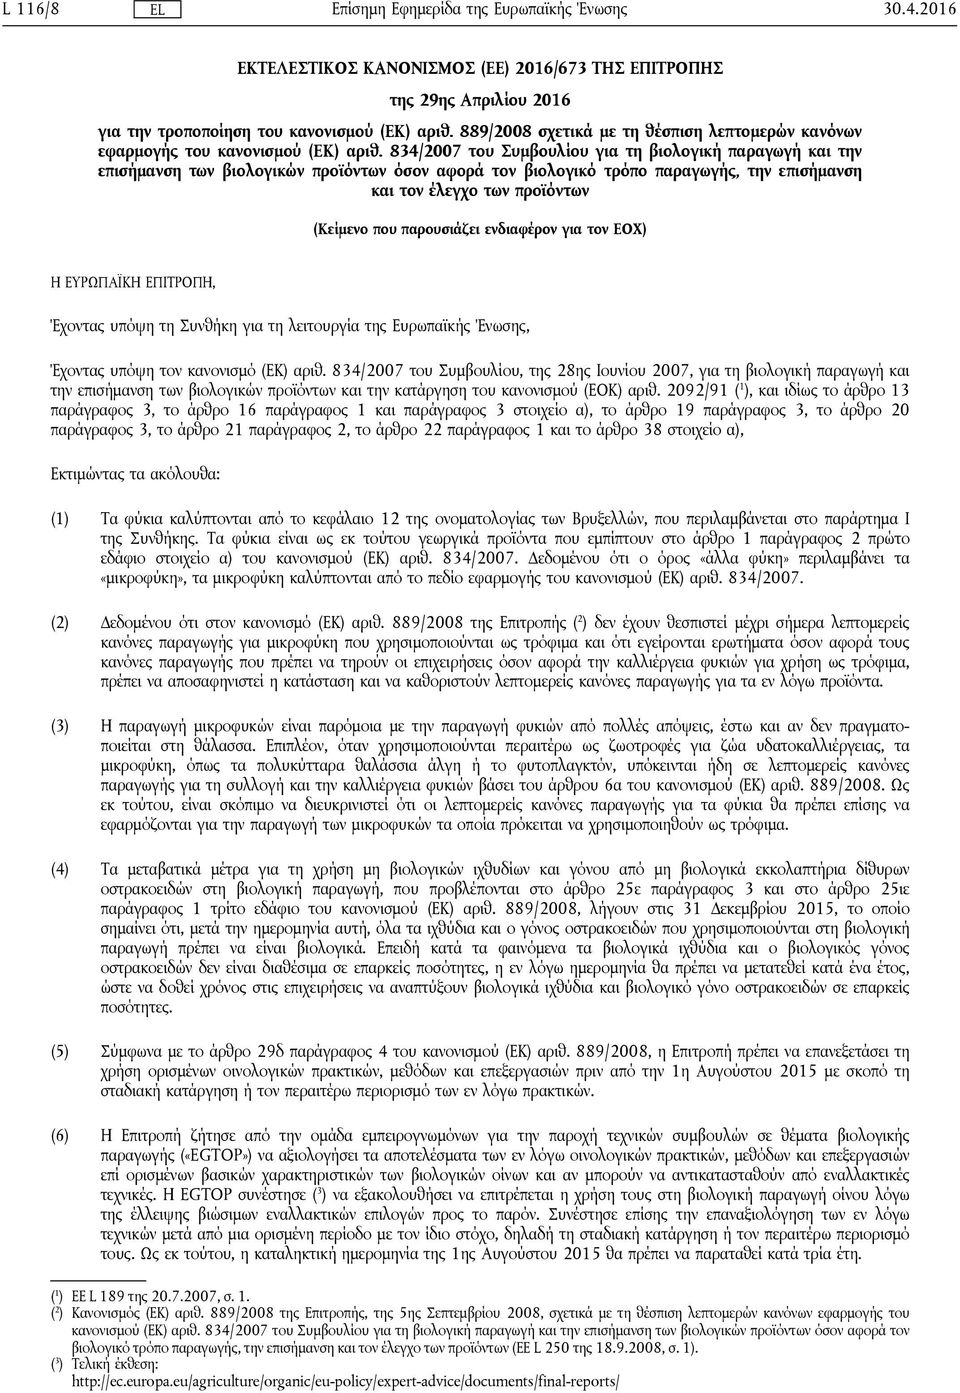 834/2007 του Συμβουλίου για τη βιολογική παραγωγή και την επισήμανση των βιολογικών προϊόντων όσον αφορά τον βιολογικό τρόπο παραγωγής, την επισήμανση και τον έλεγχο των προϊόντων (Κείμενο που